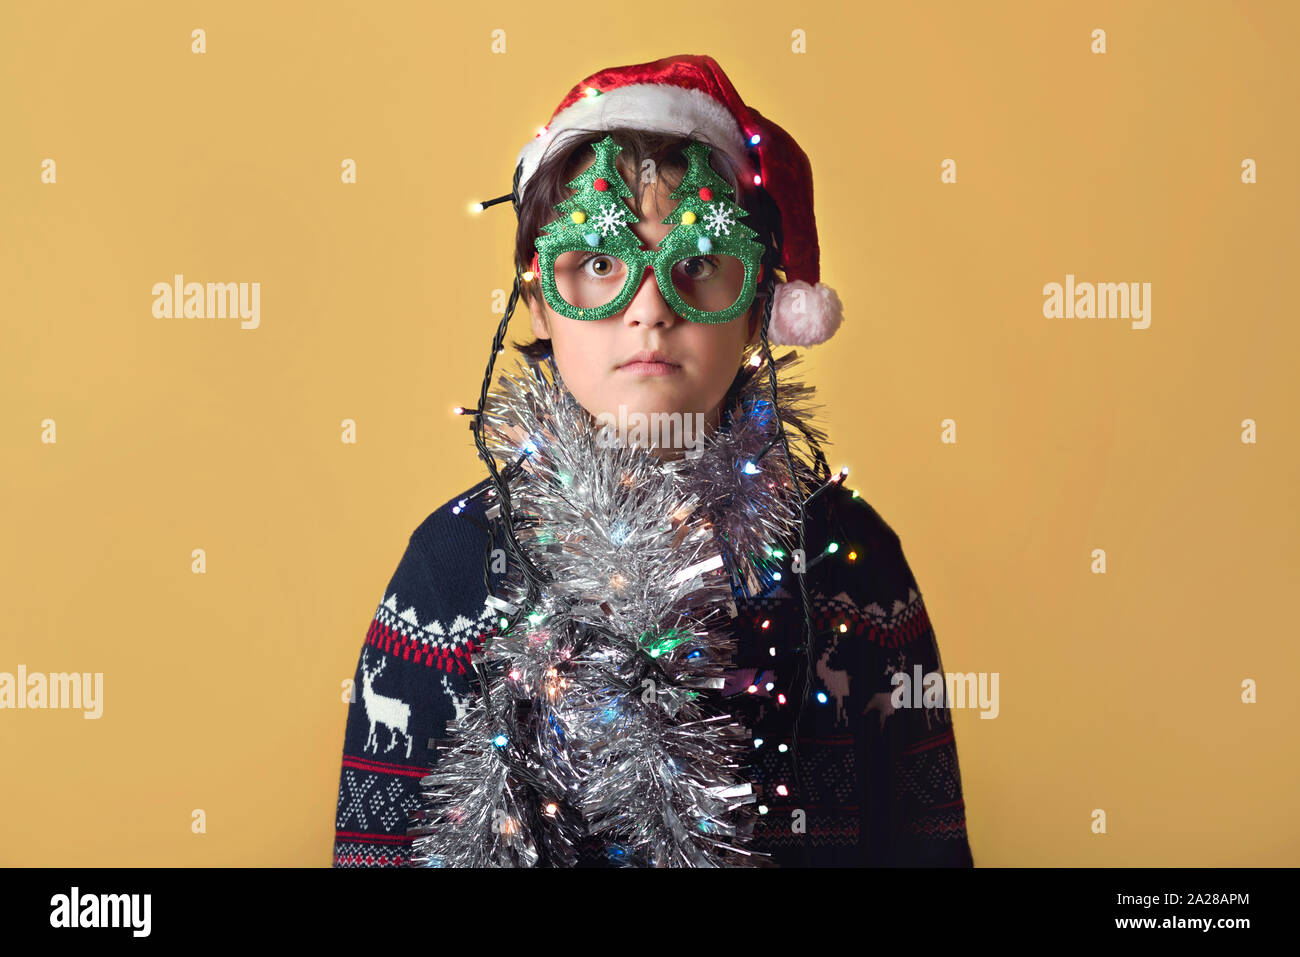 Enfant drôle avec des lumières de Noël Wearing Christmas Santa Claus Hat sur fond jaune Banque D'Images